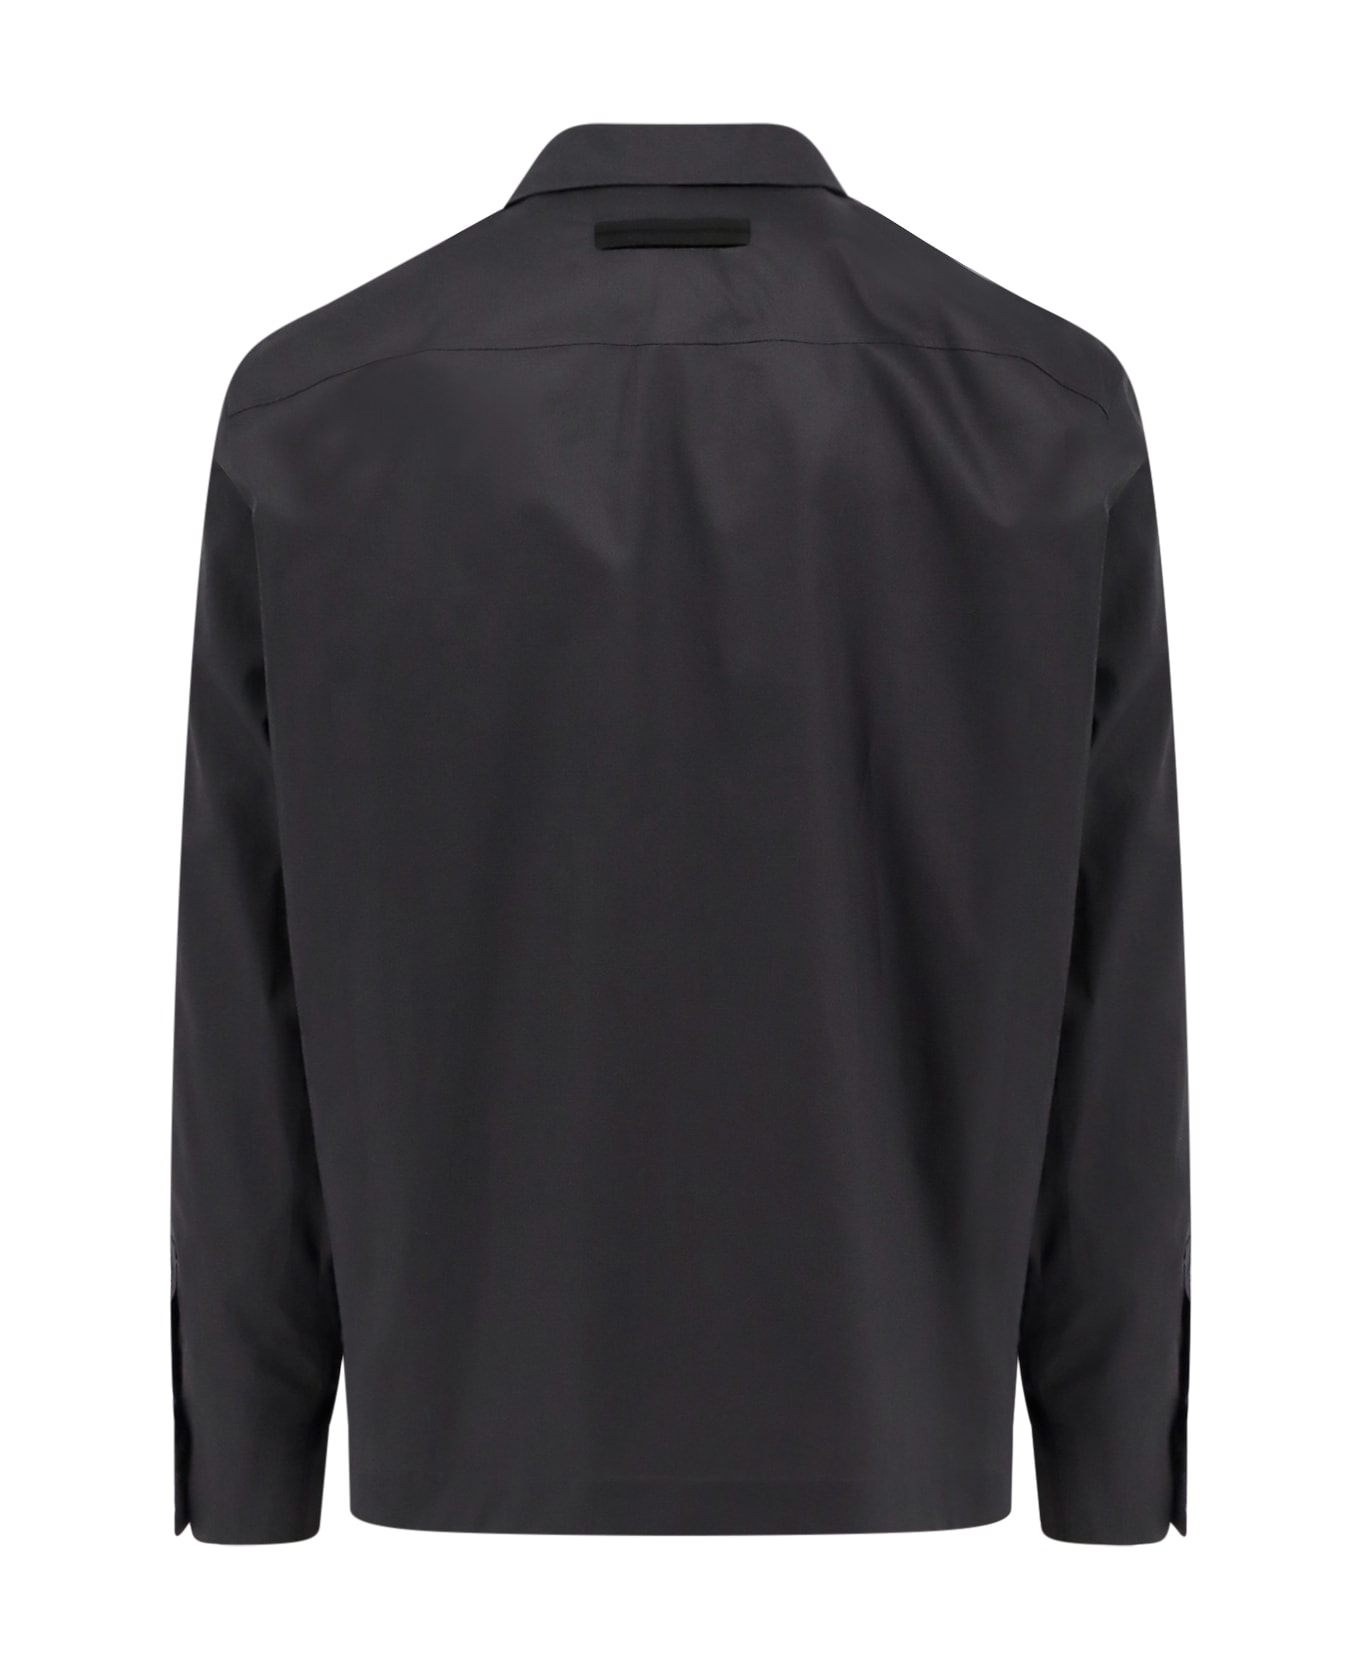 Zegna Shirt - Black シャツ